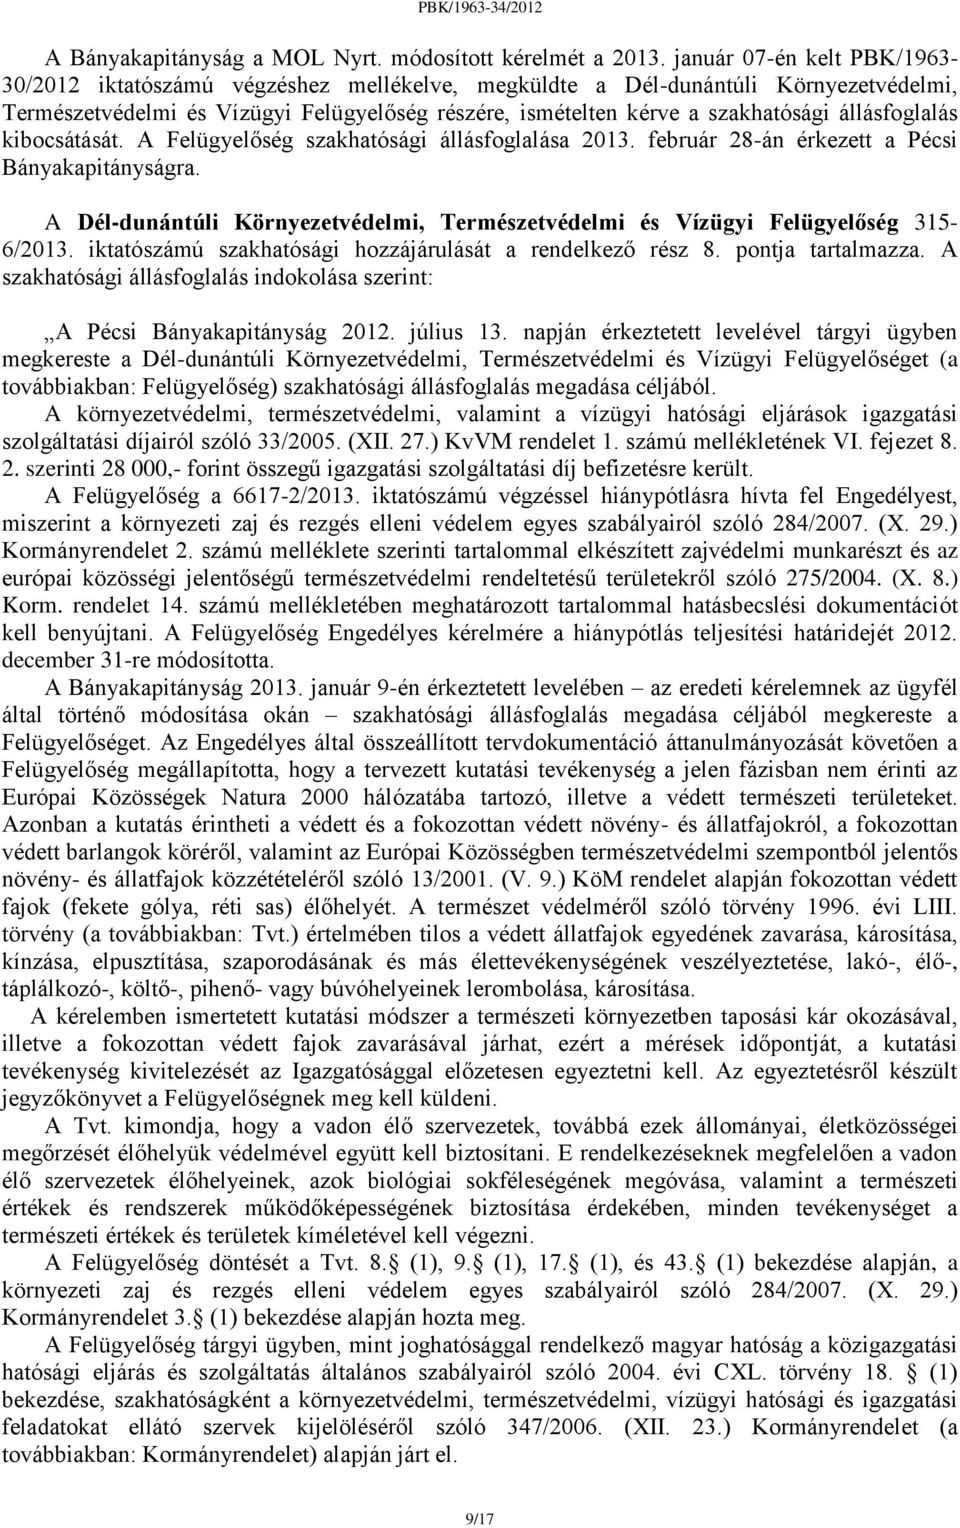 állásfoglalás kibocsátását. A Felügyelőség szakhatósági állásfoglalása 2013. február 28-án érkezett a Pécsi Bányakapitányságra.